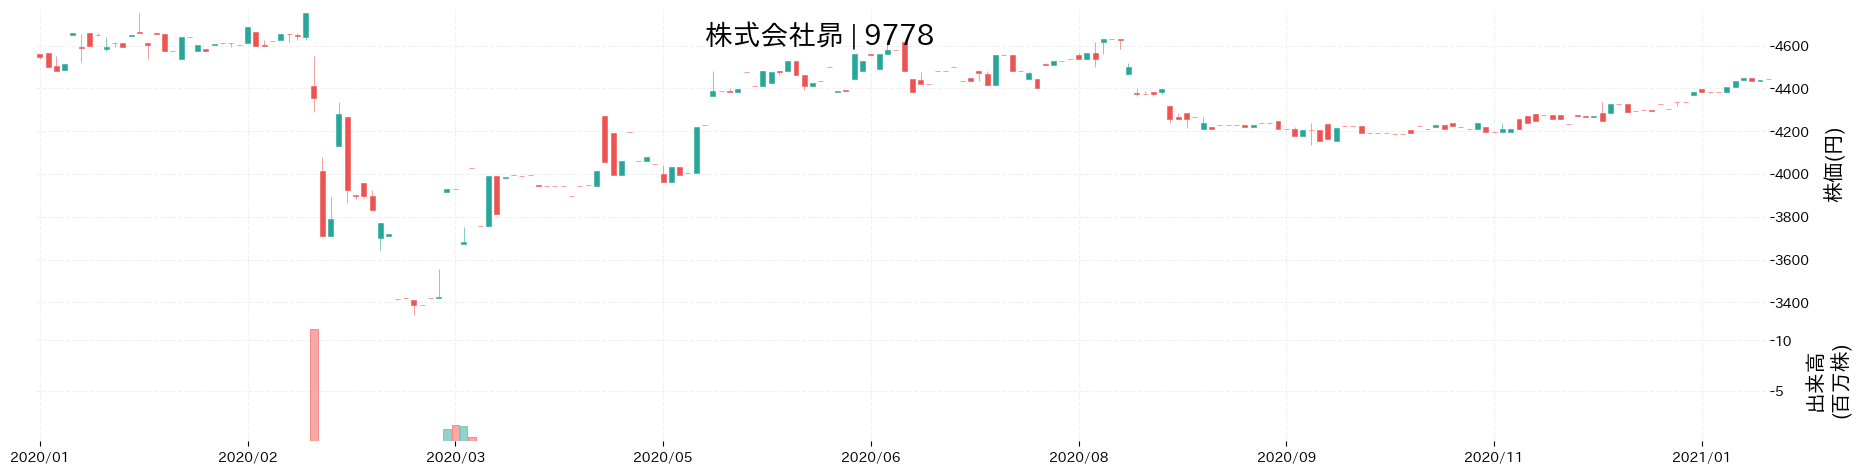 昴の株価推移(2020)